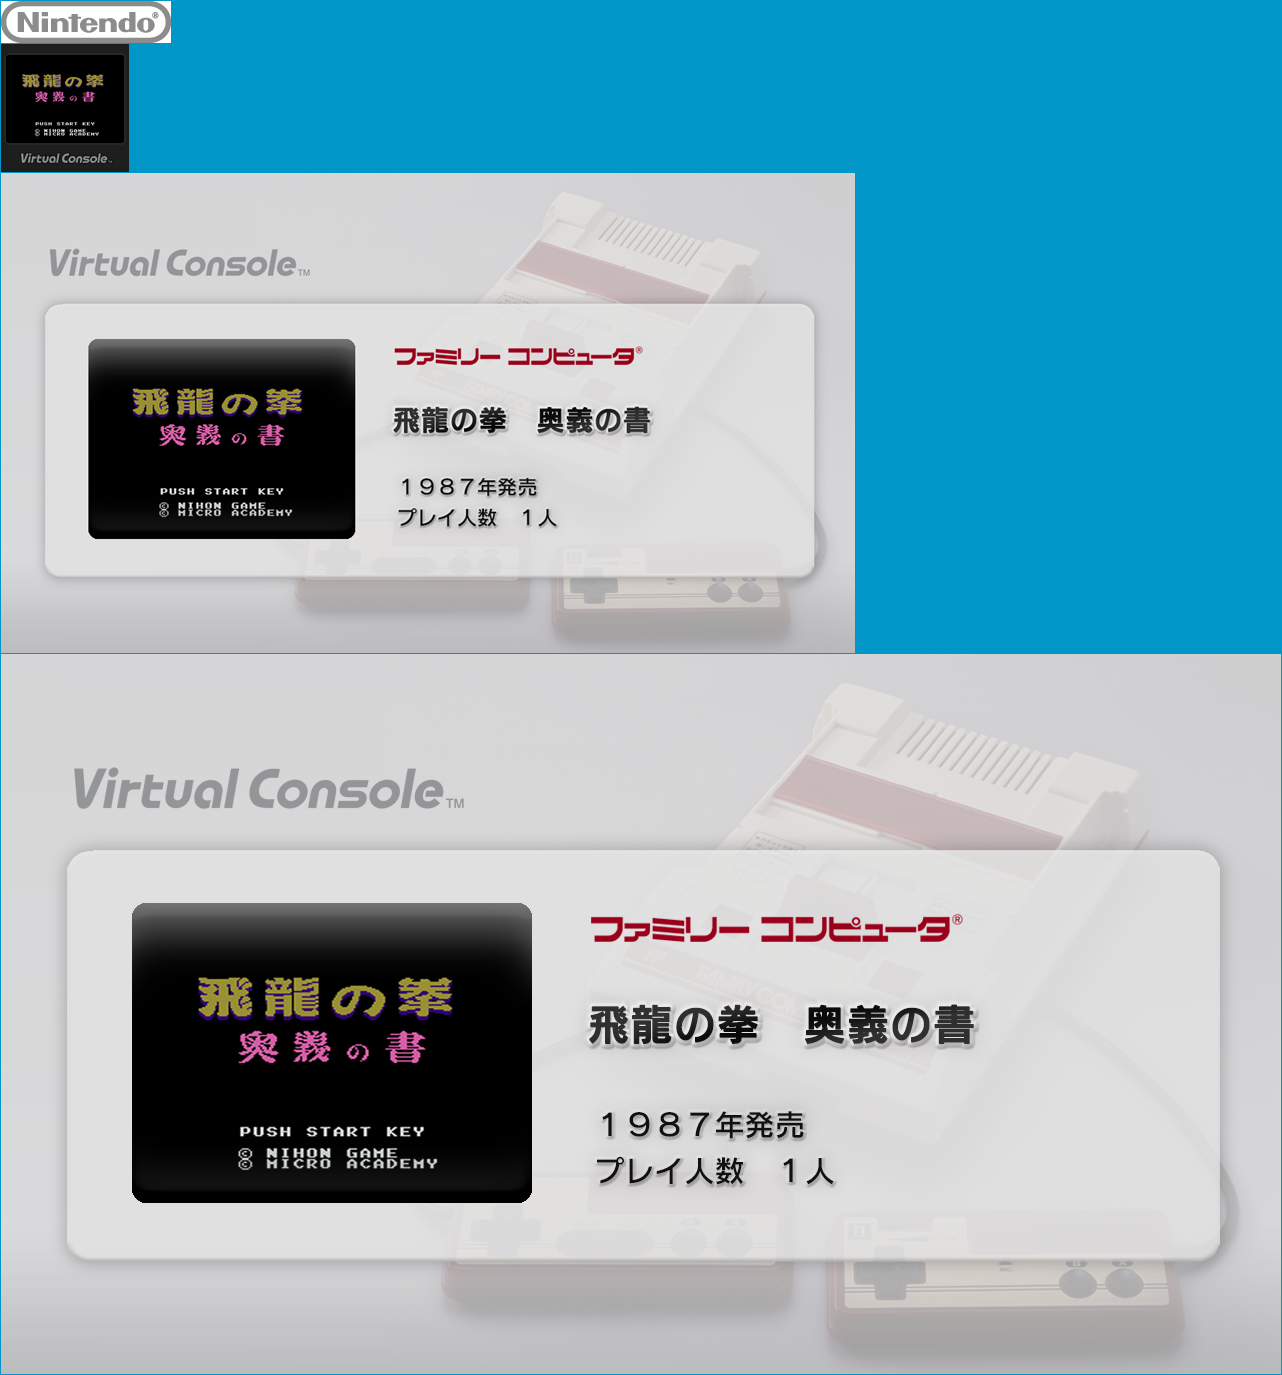 Virtual Console - Hiryū no Ken: Ōgi no Sho